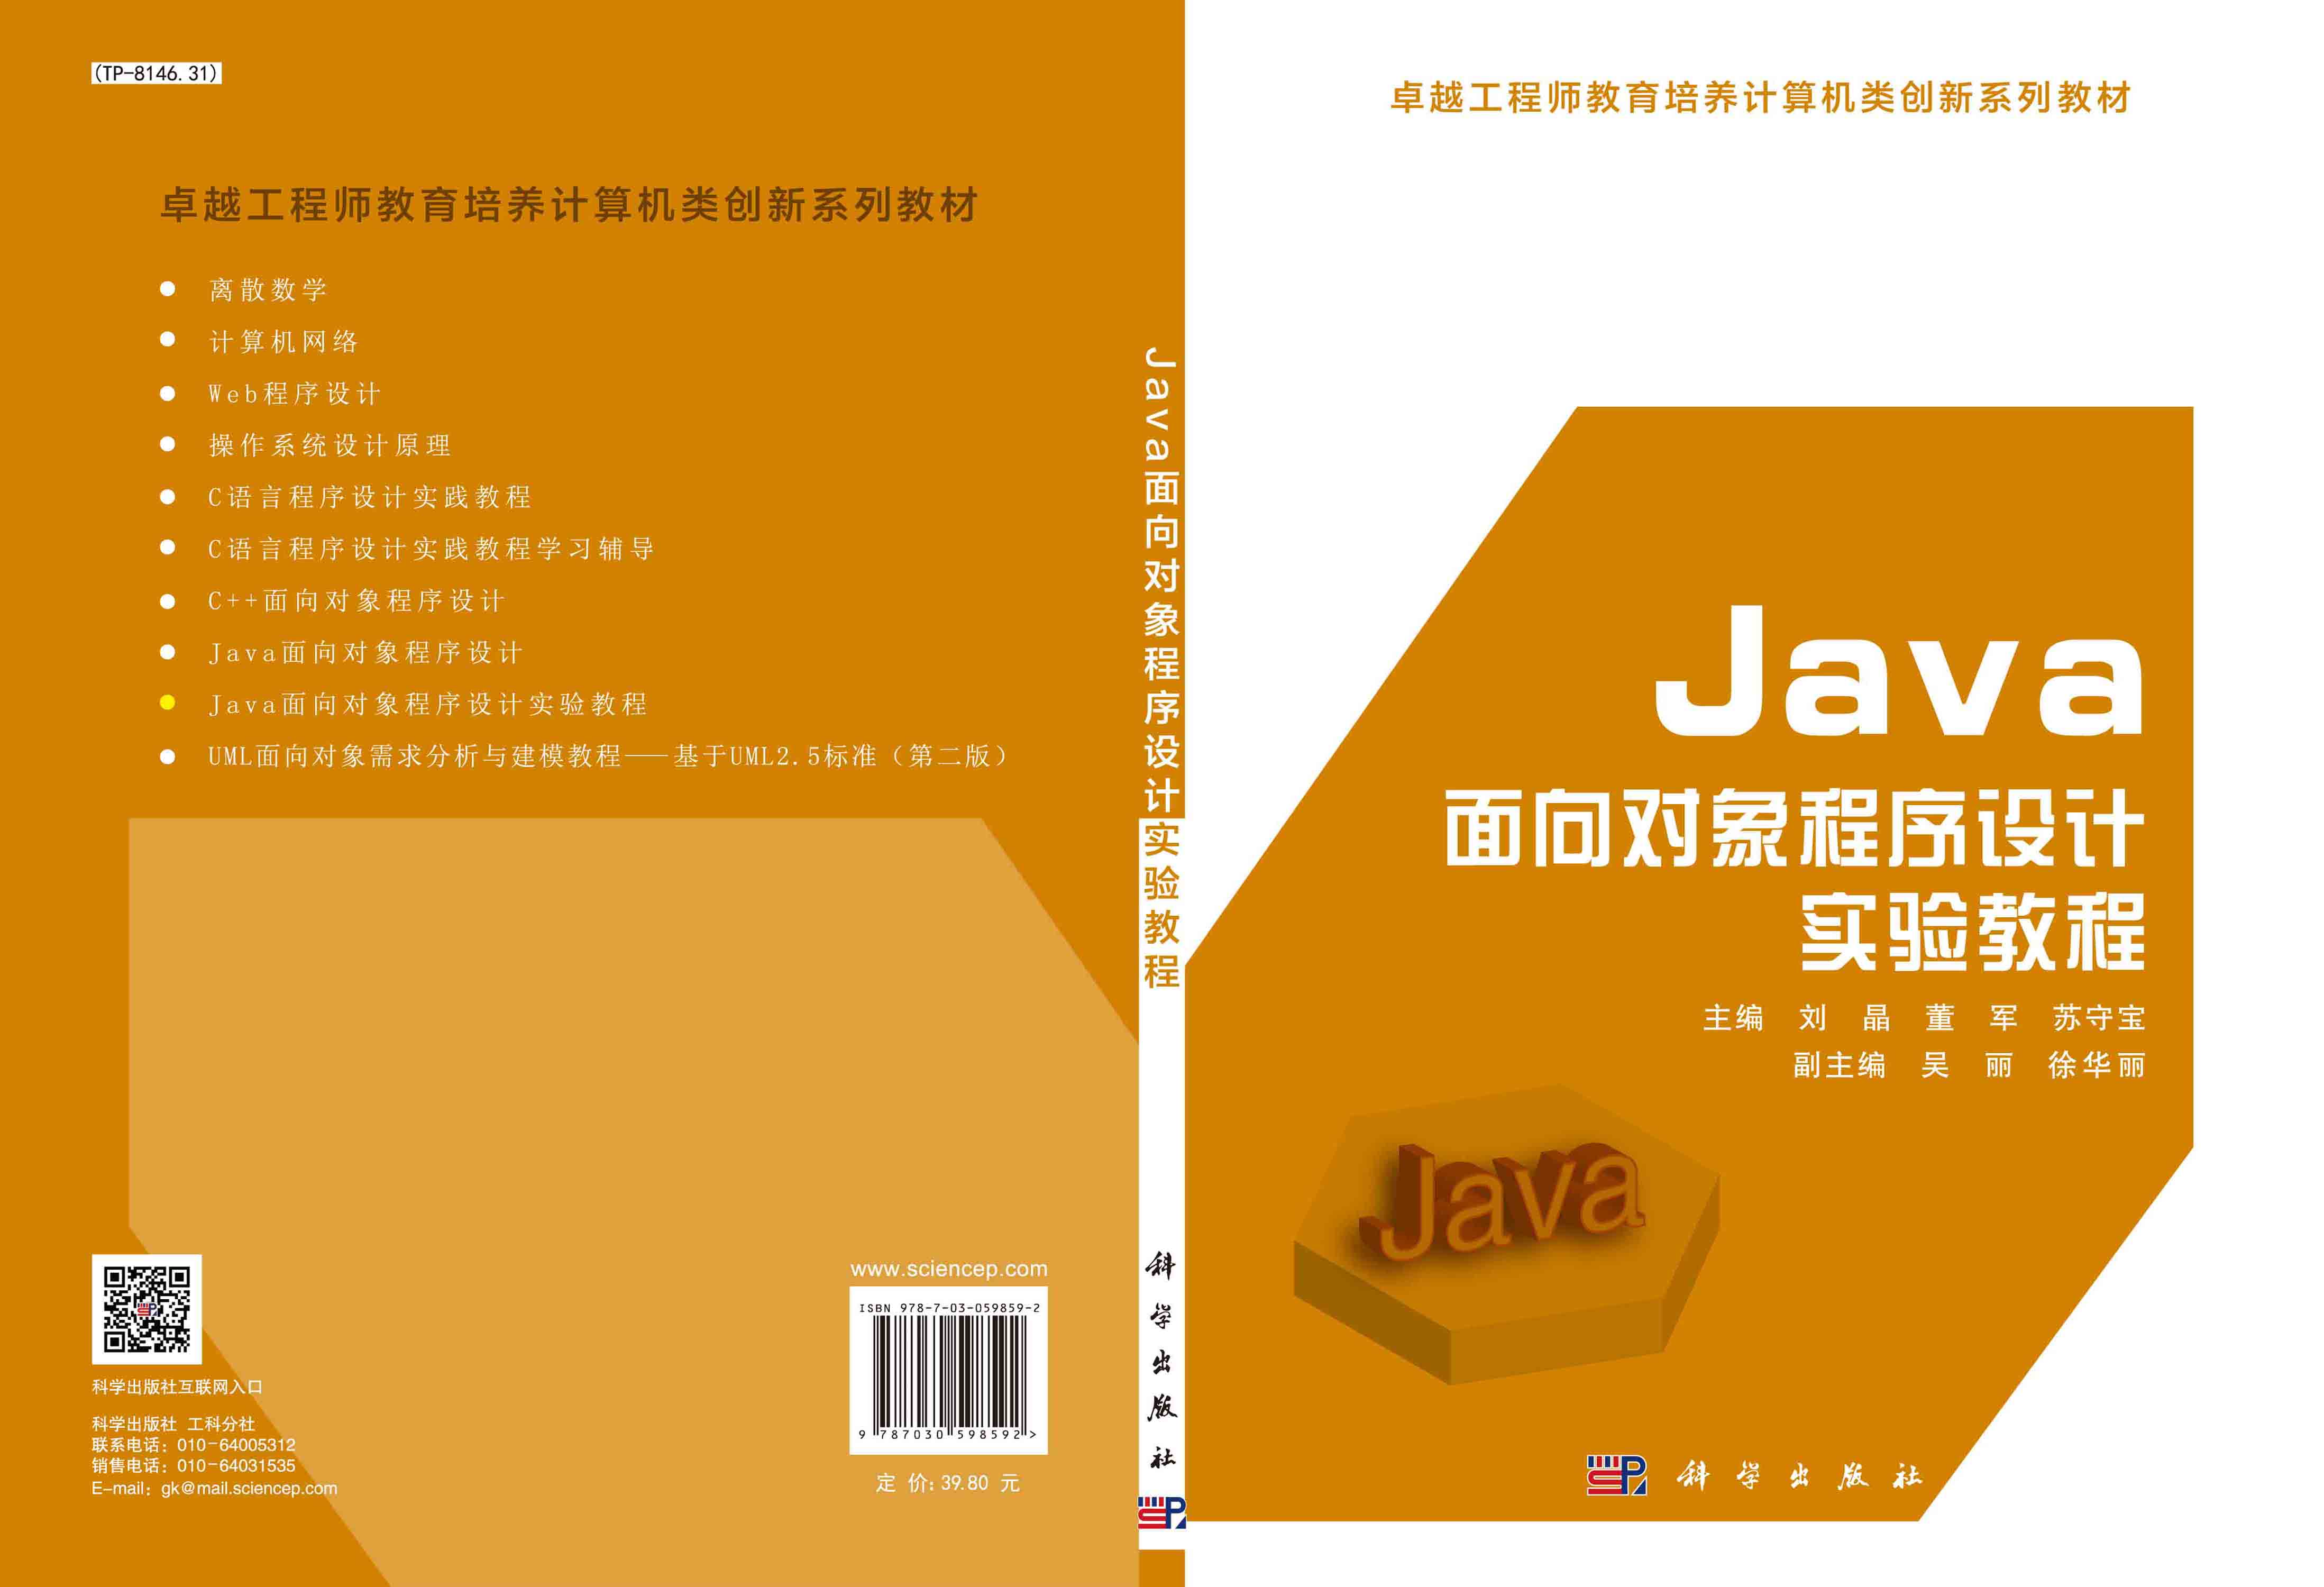 Java面向对象程序设计实验教程